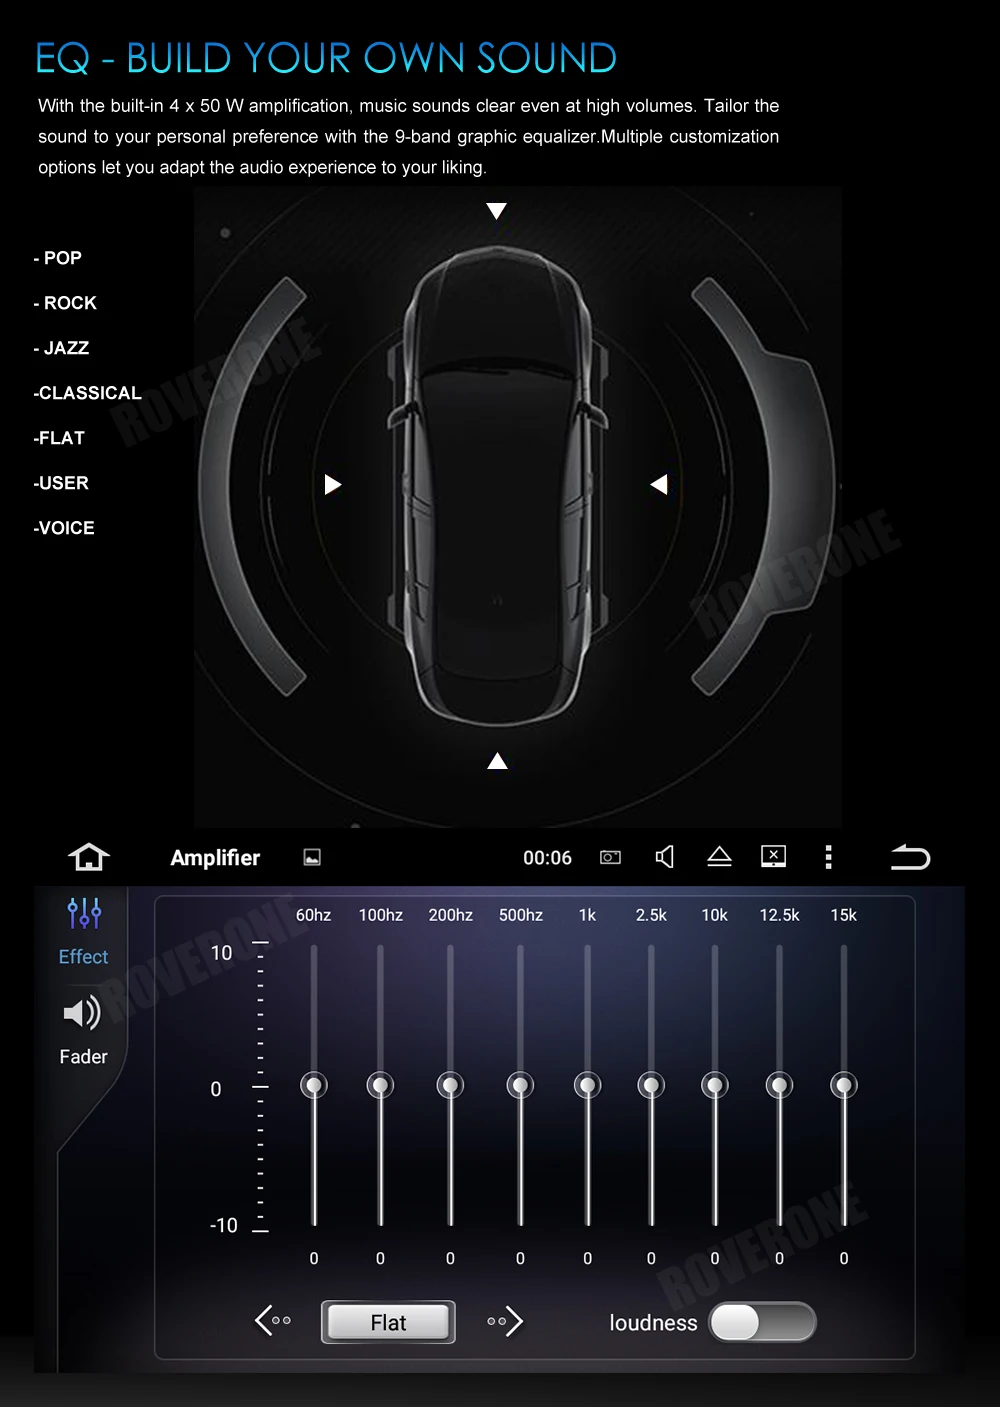 Мультимедийный плеер с сенсорным экраном для VW Golf 7 MK7 для Volkswagen MIB, Android 9,0